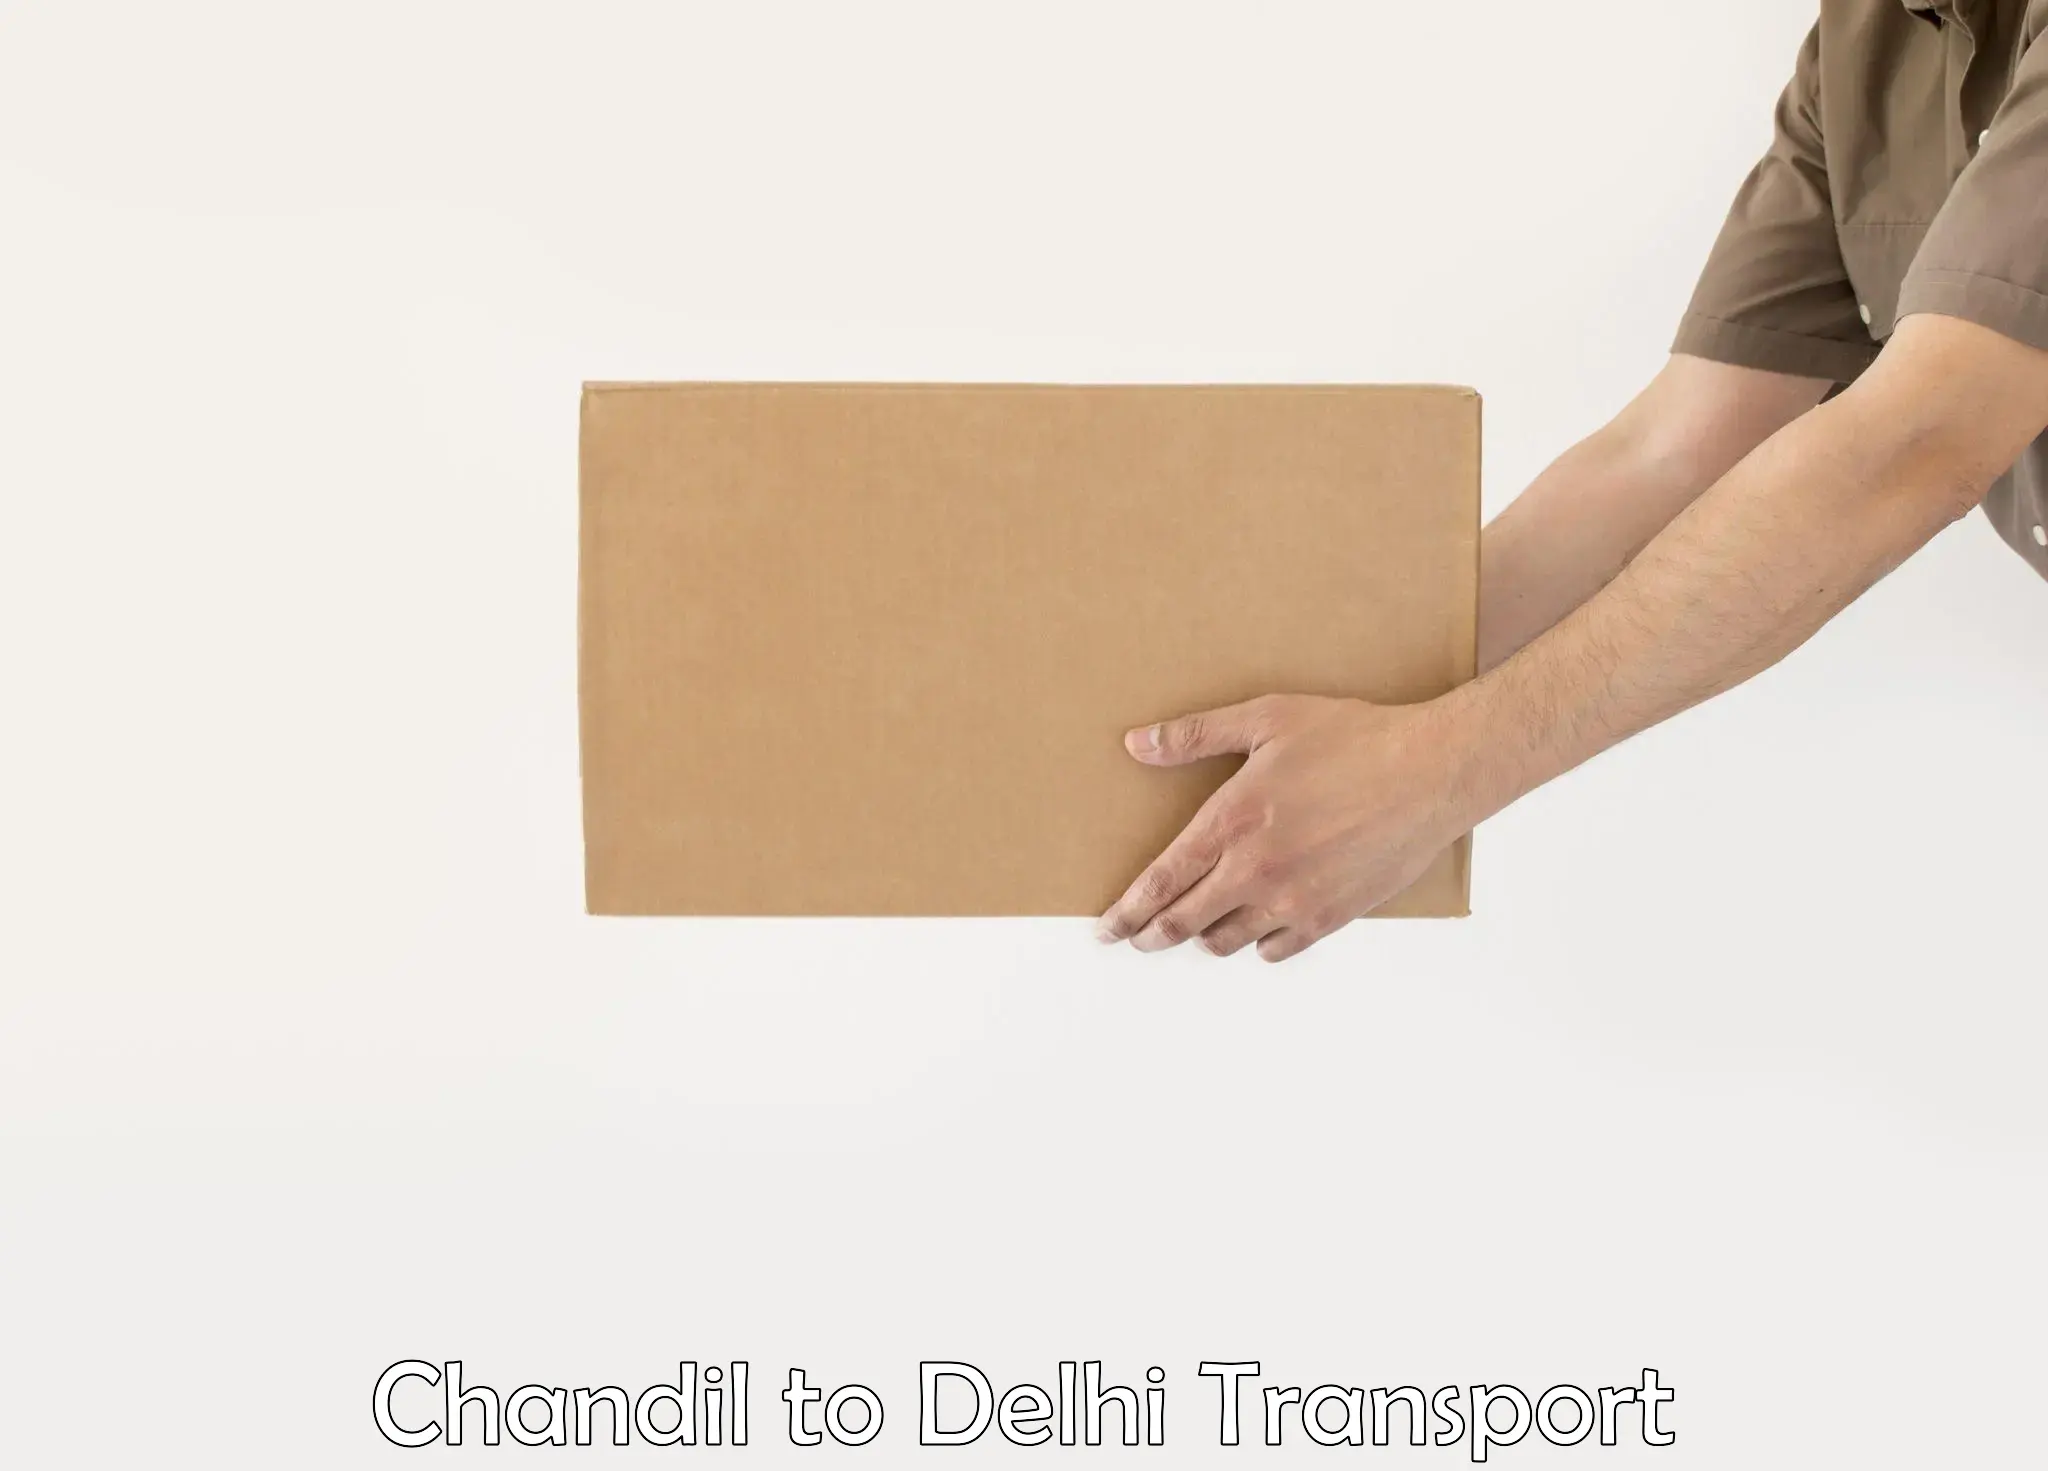 Delivery service Chandil to Delhi